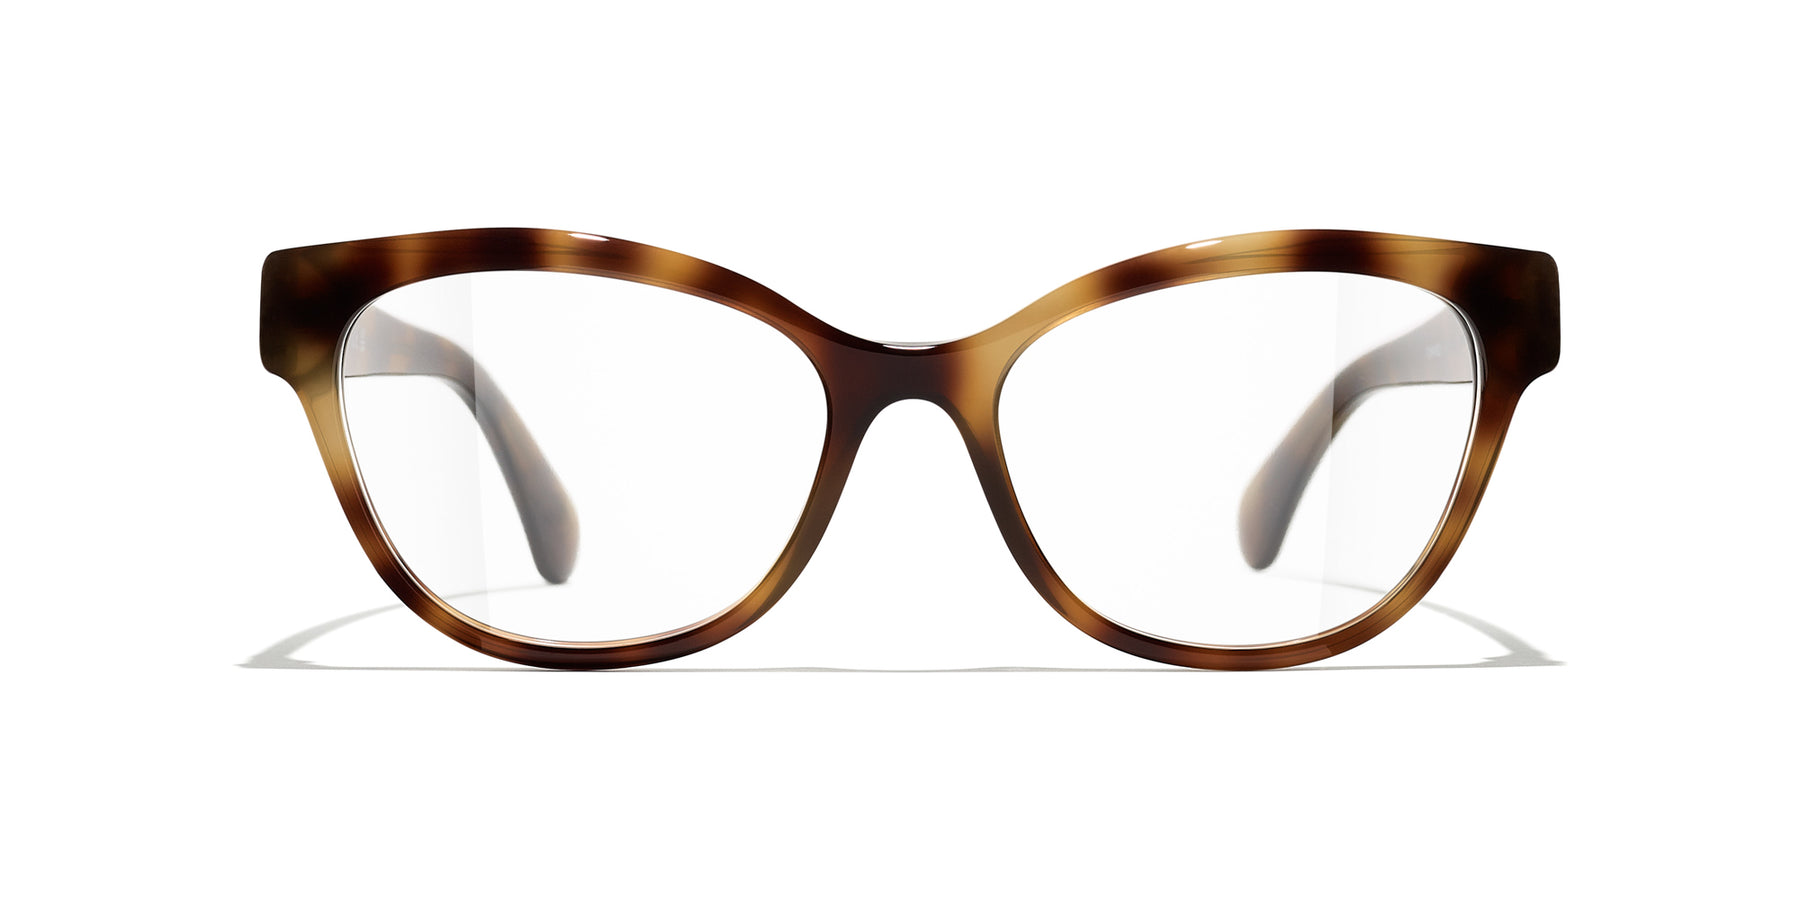 Eyeglasses: Square Eyeglasses, acetate — Fashion